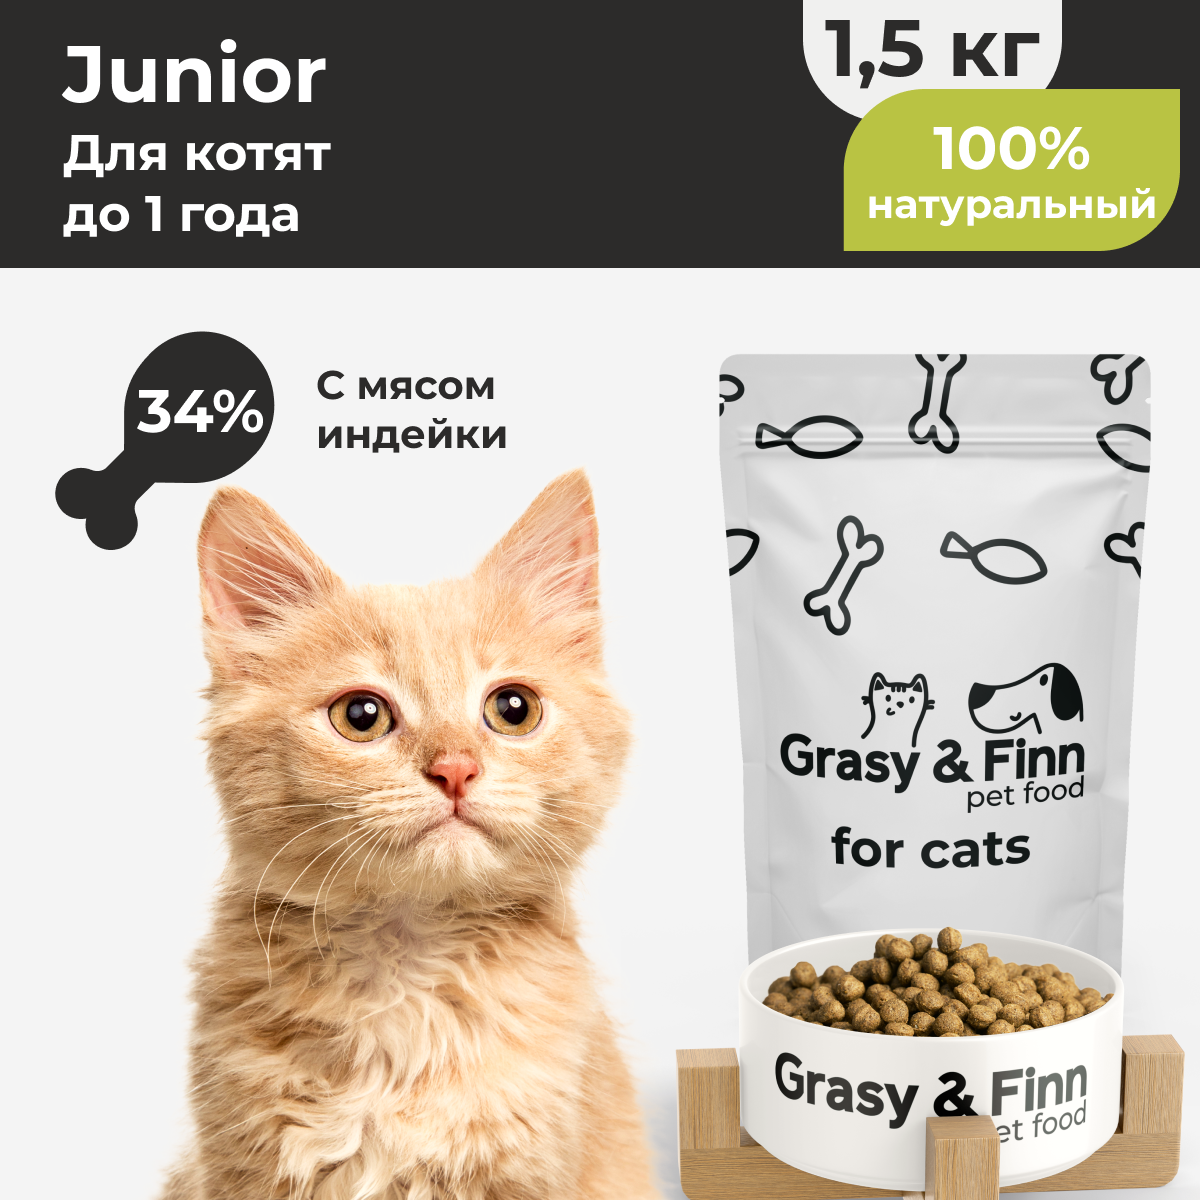 Grasy & Finn Сухой корм супер-премиум-класса для котят до 1 года Индейка 1,5 кг